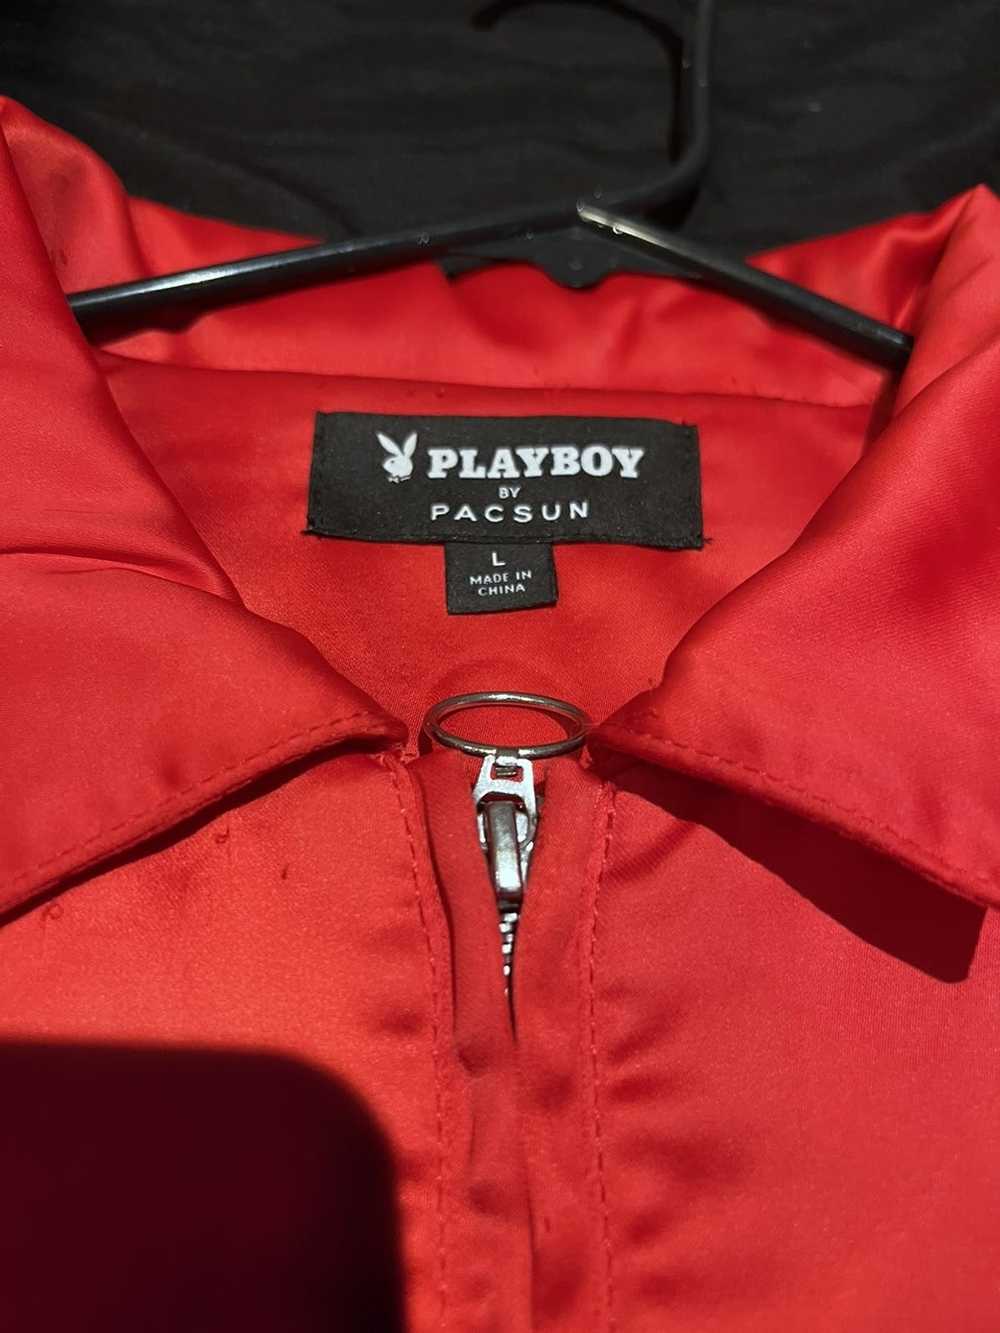 Playboy Pacsun Playboy jacket🌹 - image 5